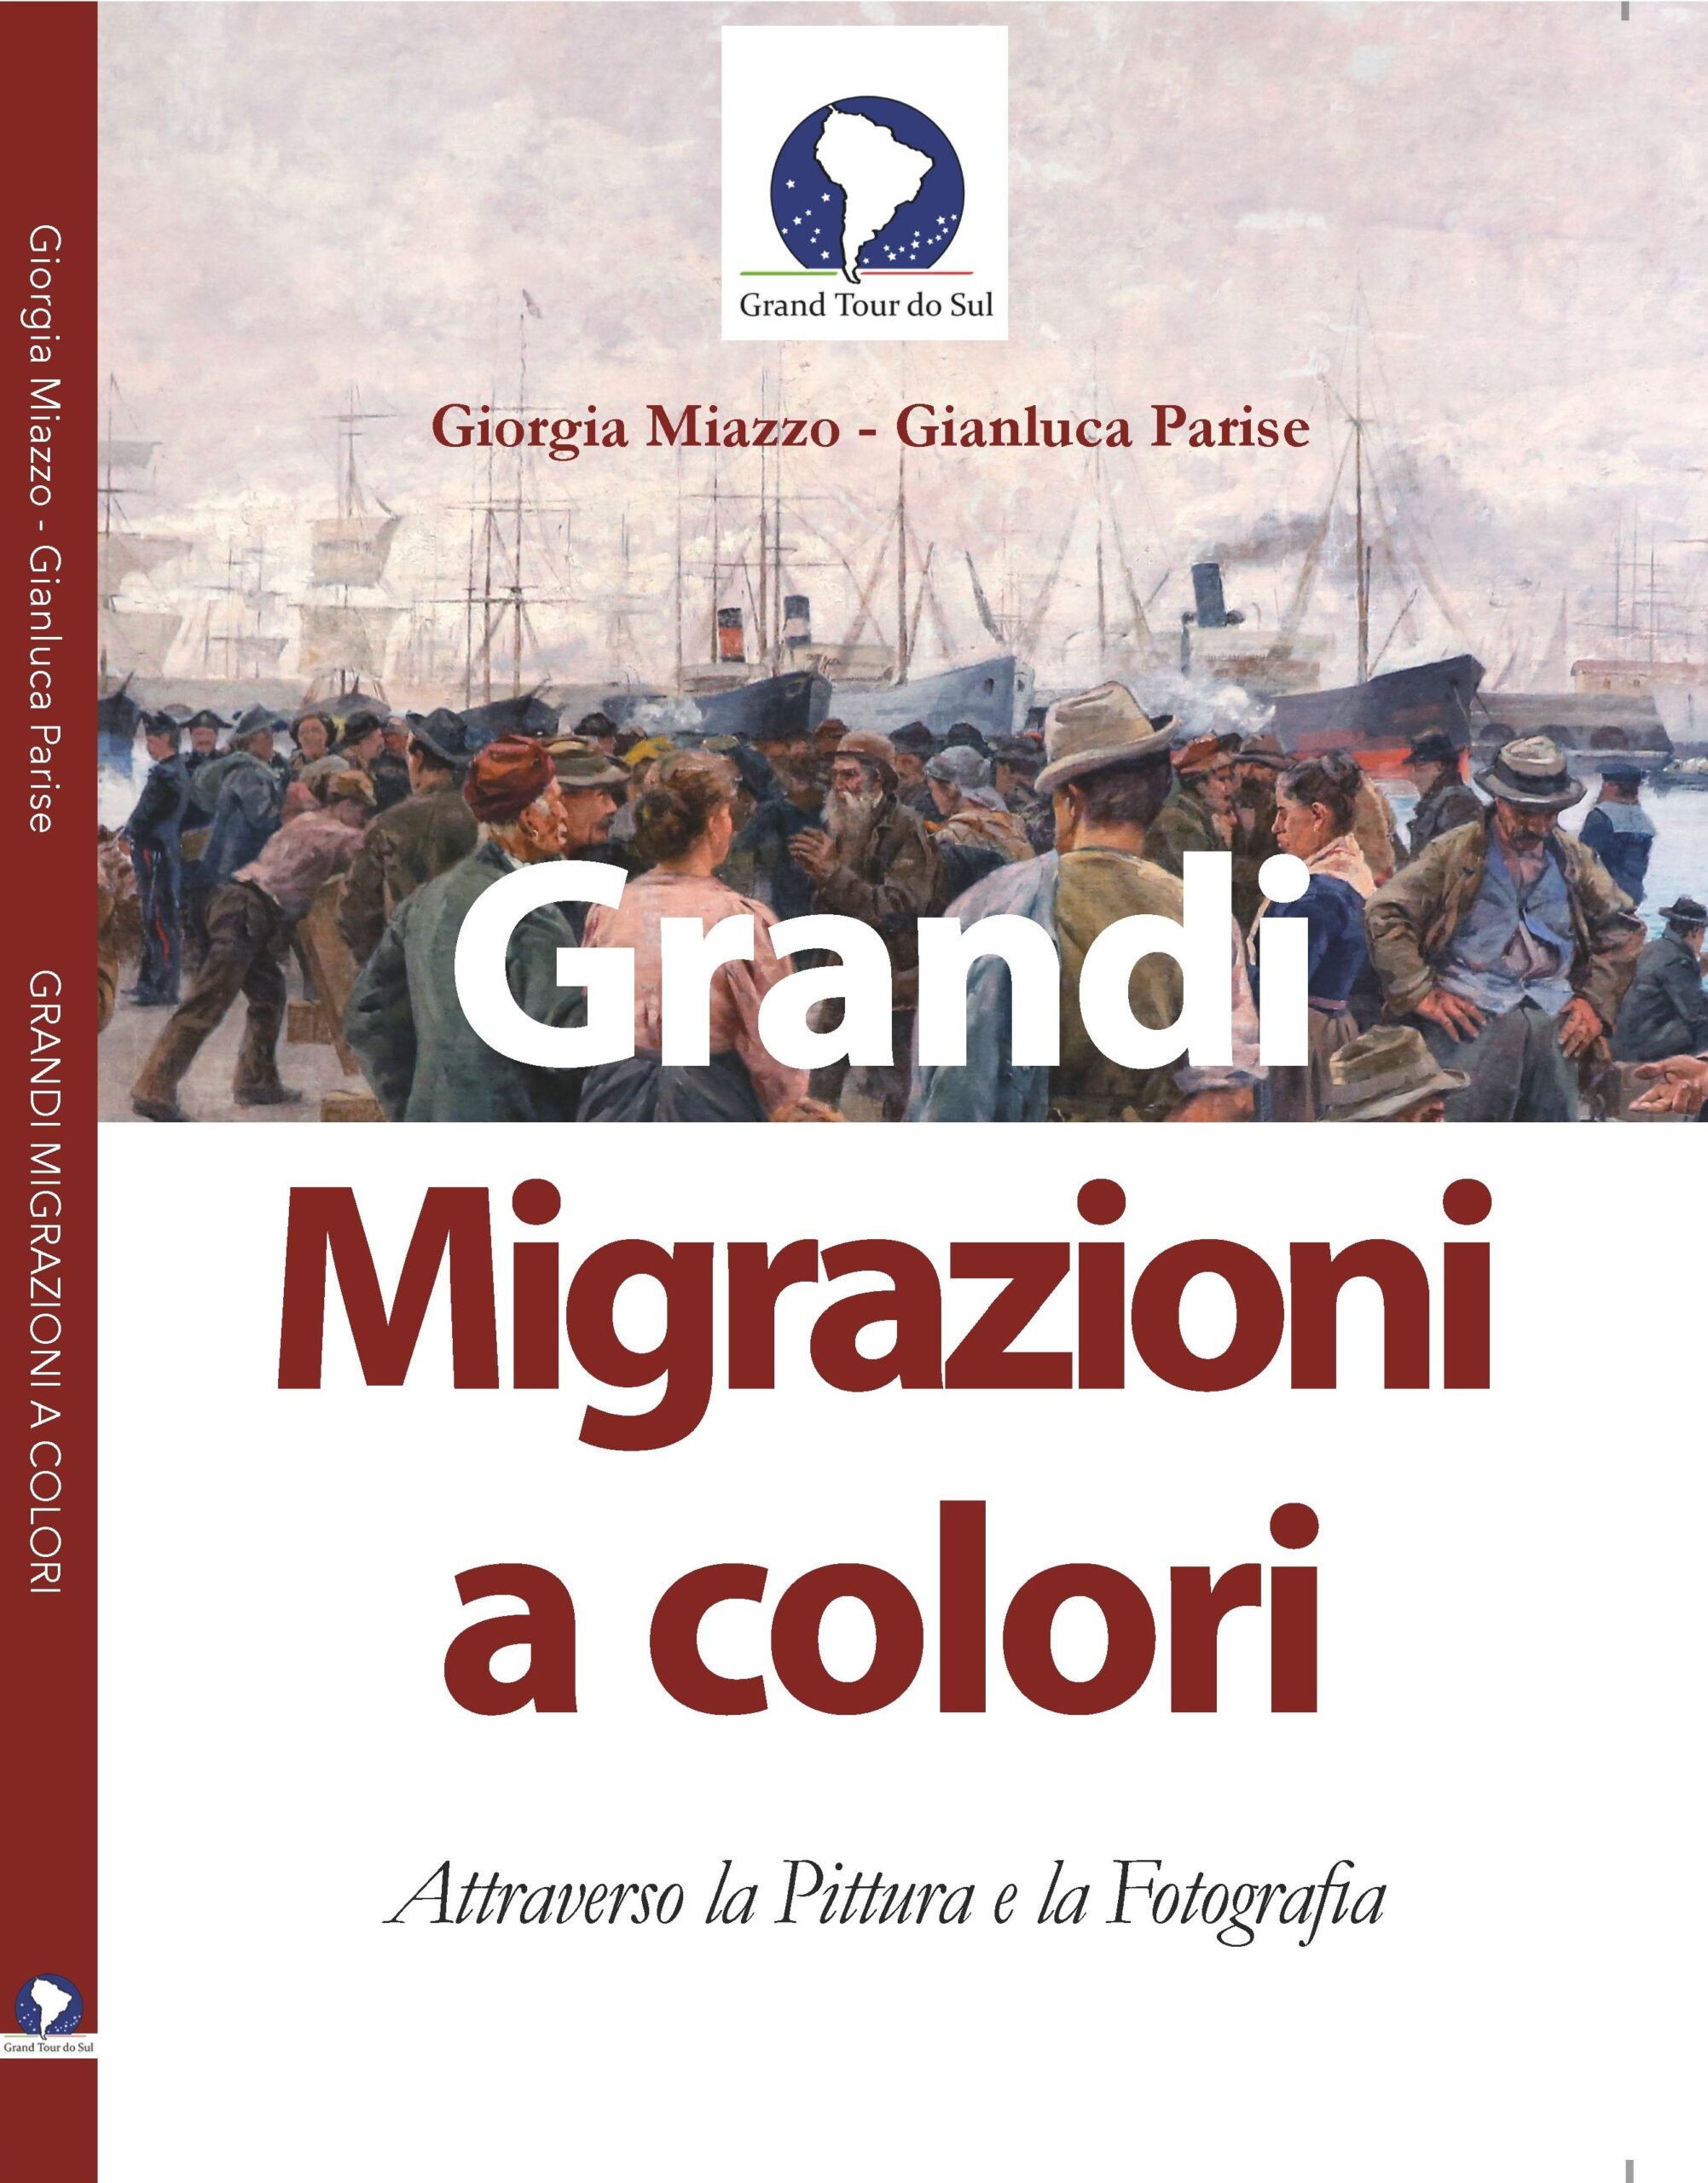 Copertina Pubblicazione Grandi Migrazioni a Colori 210x300